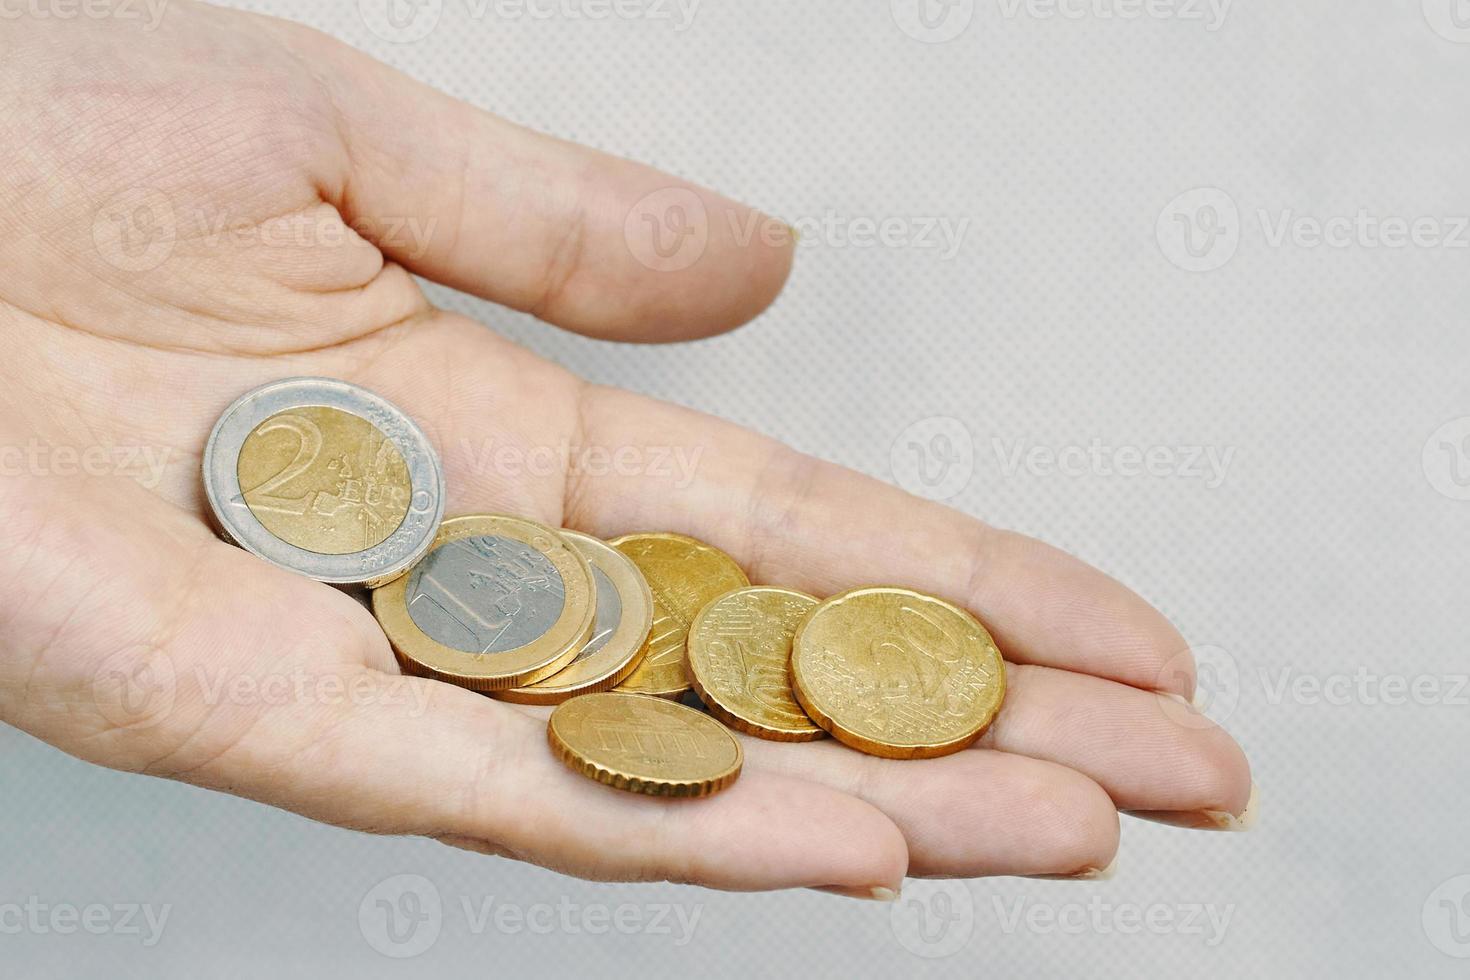 euromunten in iemands handen foto